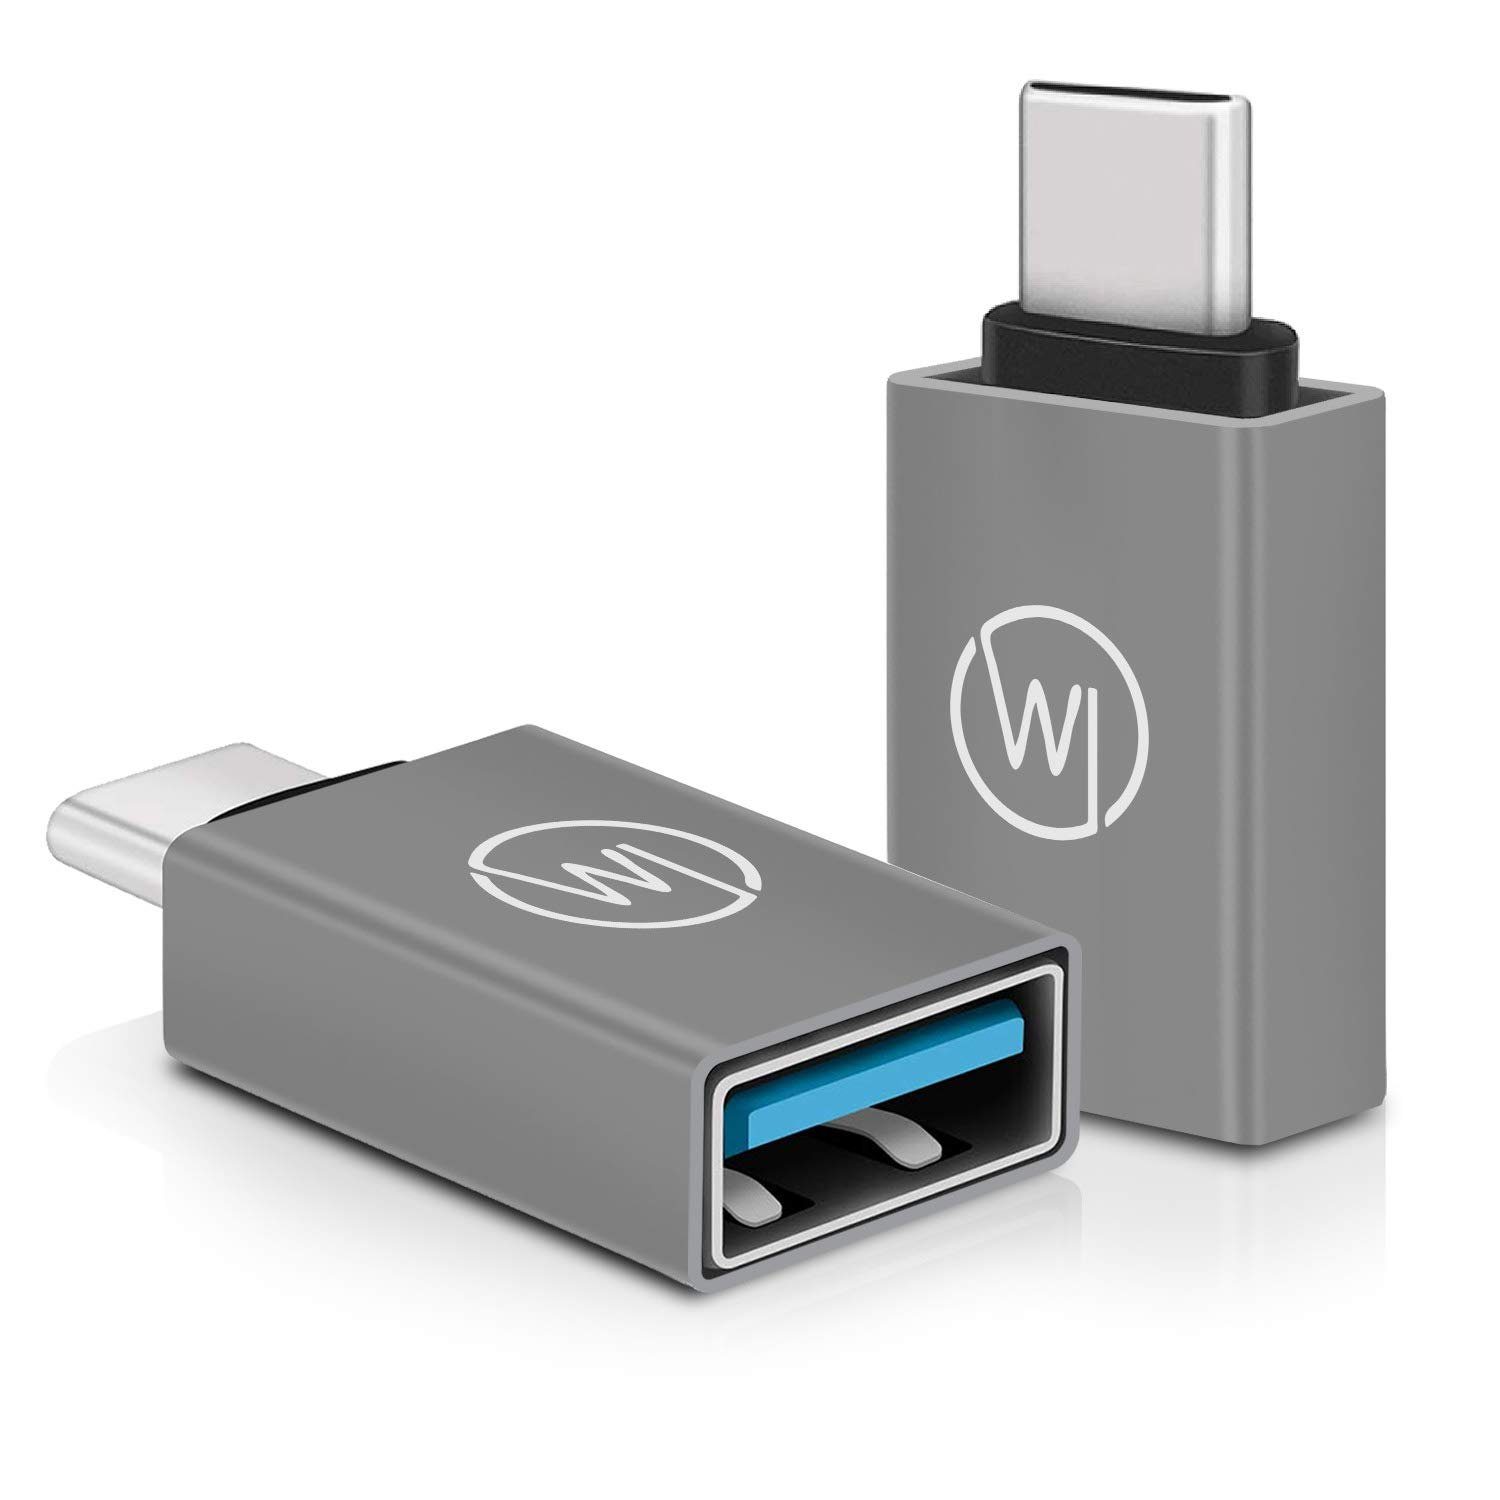 Wicked Chili »USB-C OTG Adapter für iPad Pro / Air, MacBook (2« USB-Adapter  USB-C zu USB-A, für iPad Pro (2018 2020 2021), Air 2021 / Macbook und  Macbook Air mit USB C